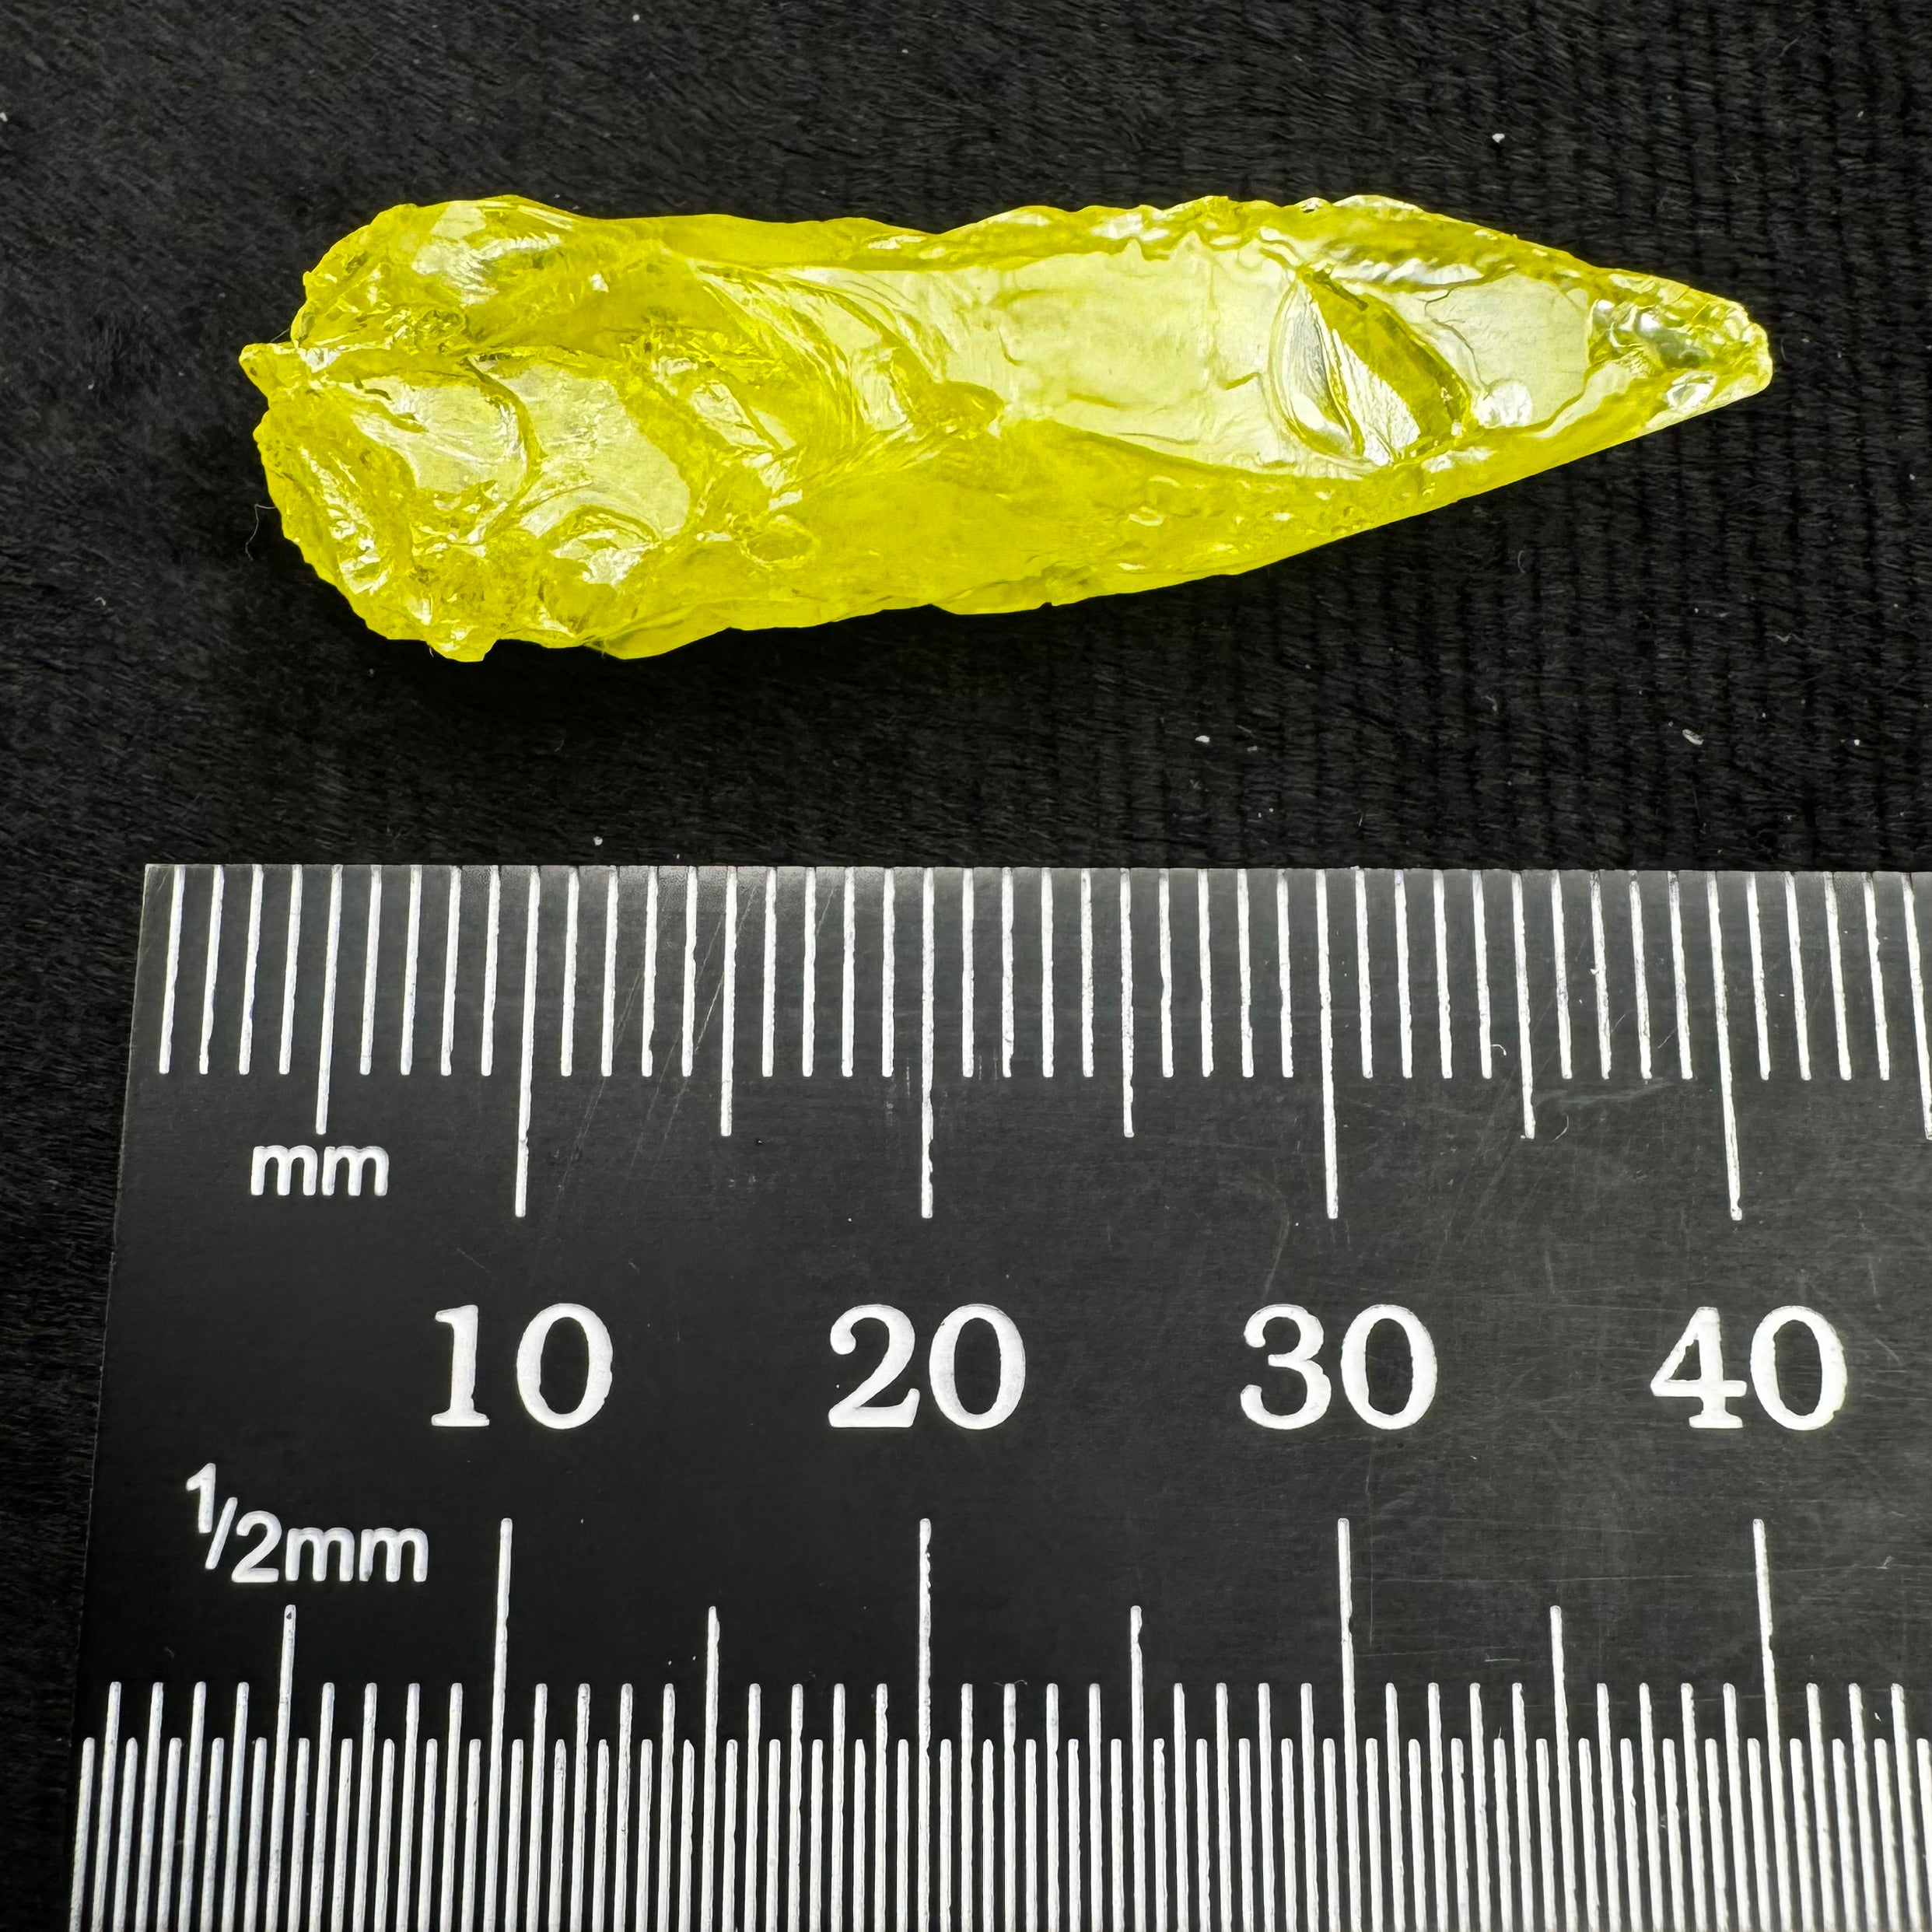 Sulfur Whole Crystal - 166